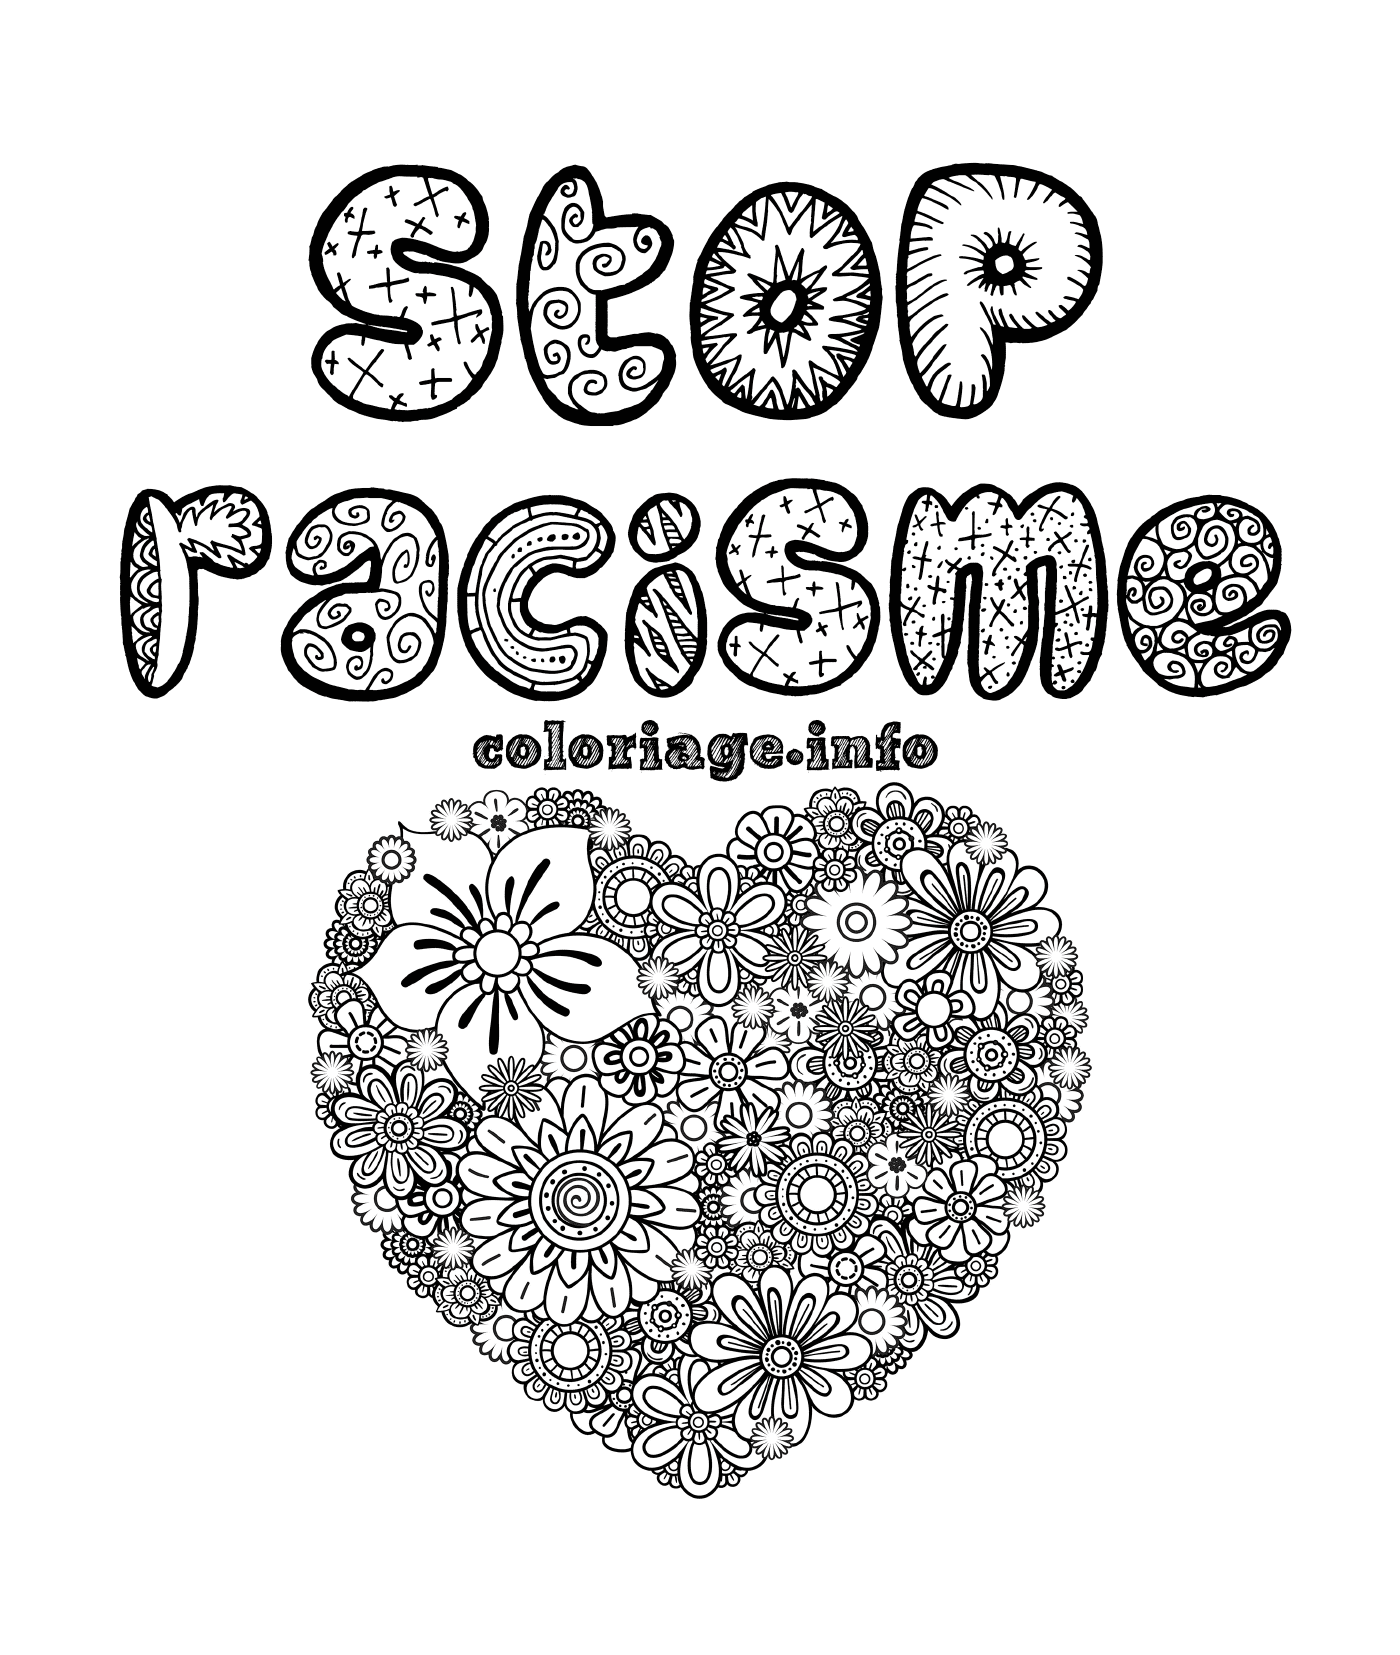  Прекратить расизм, сердце Мандалы 